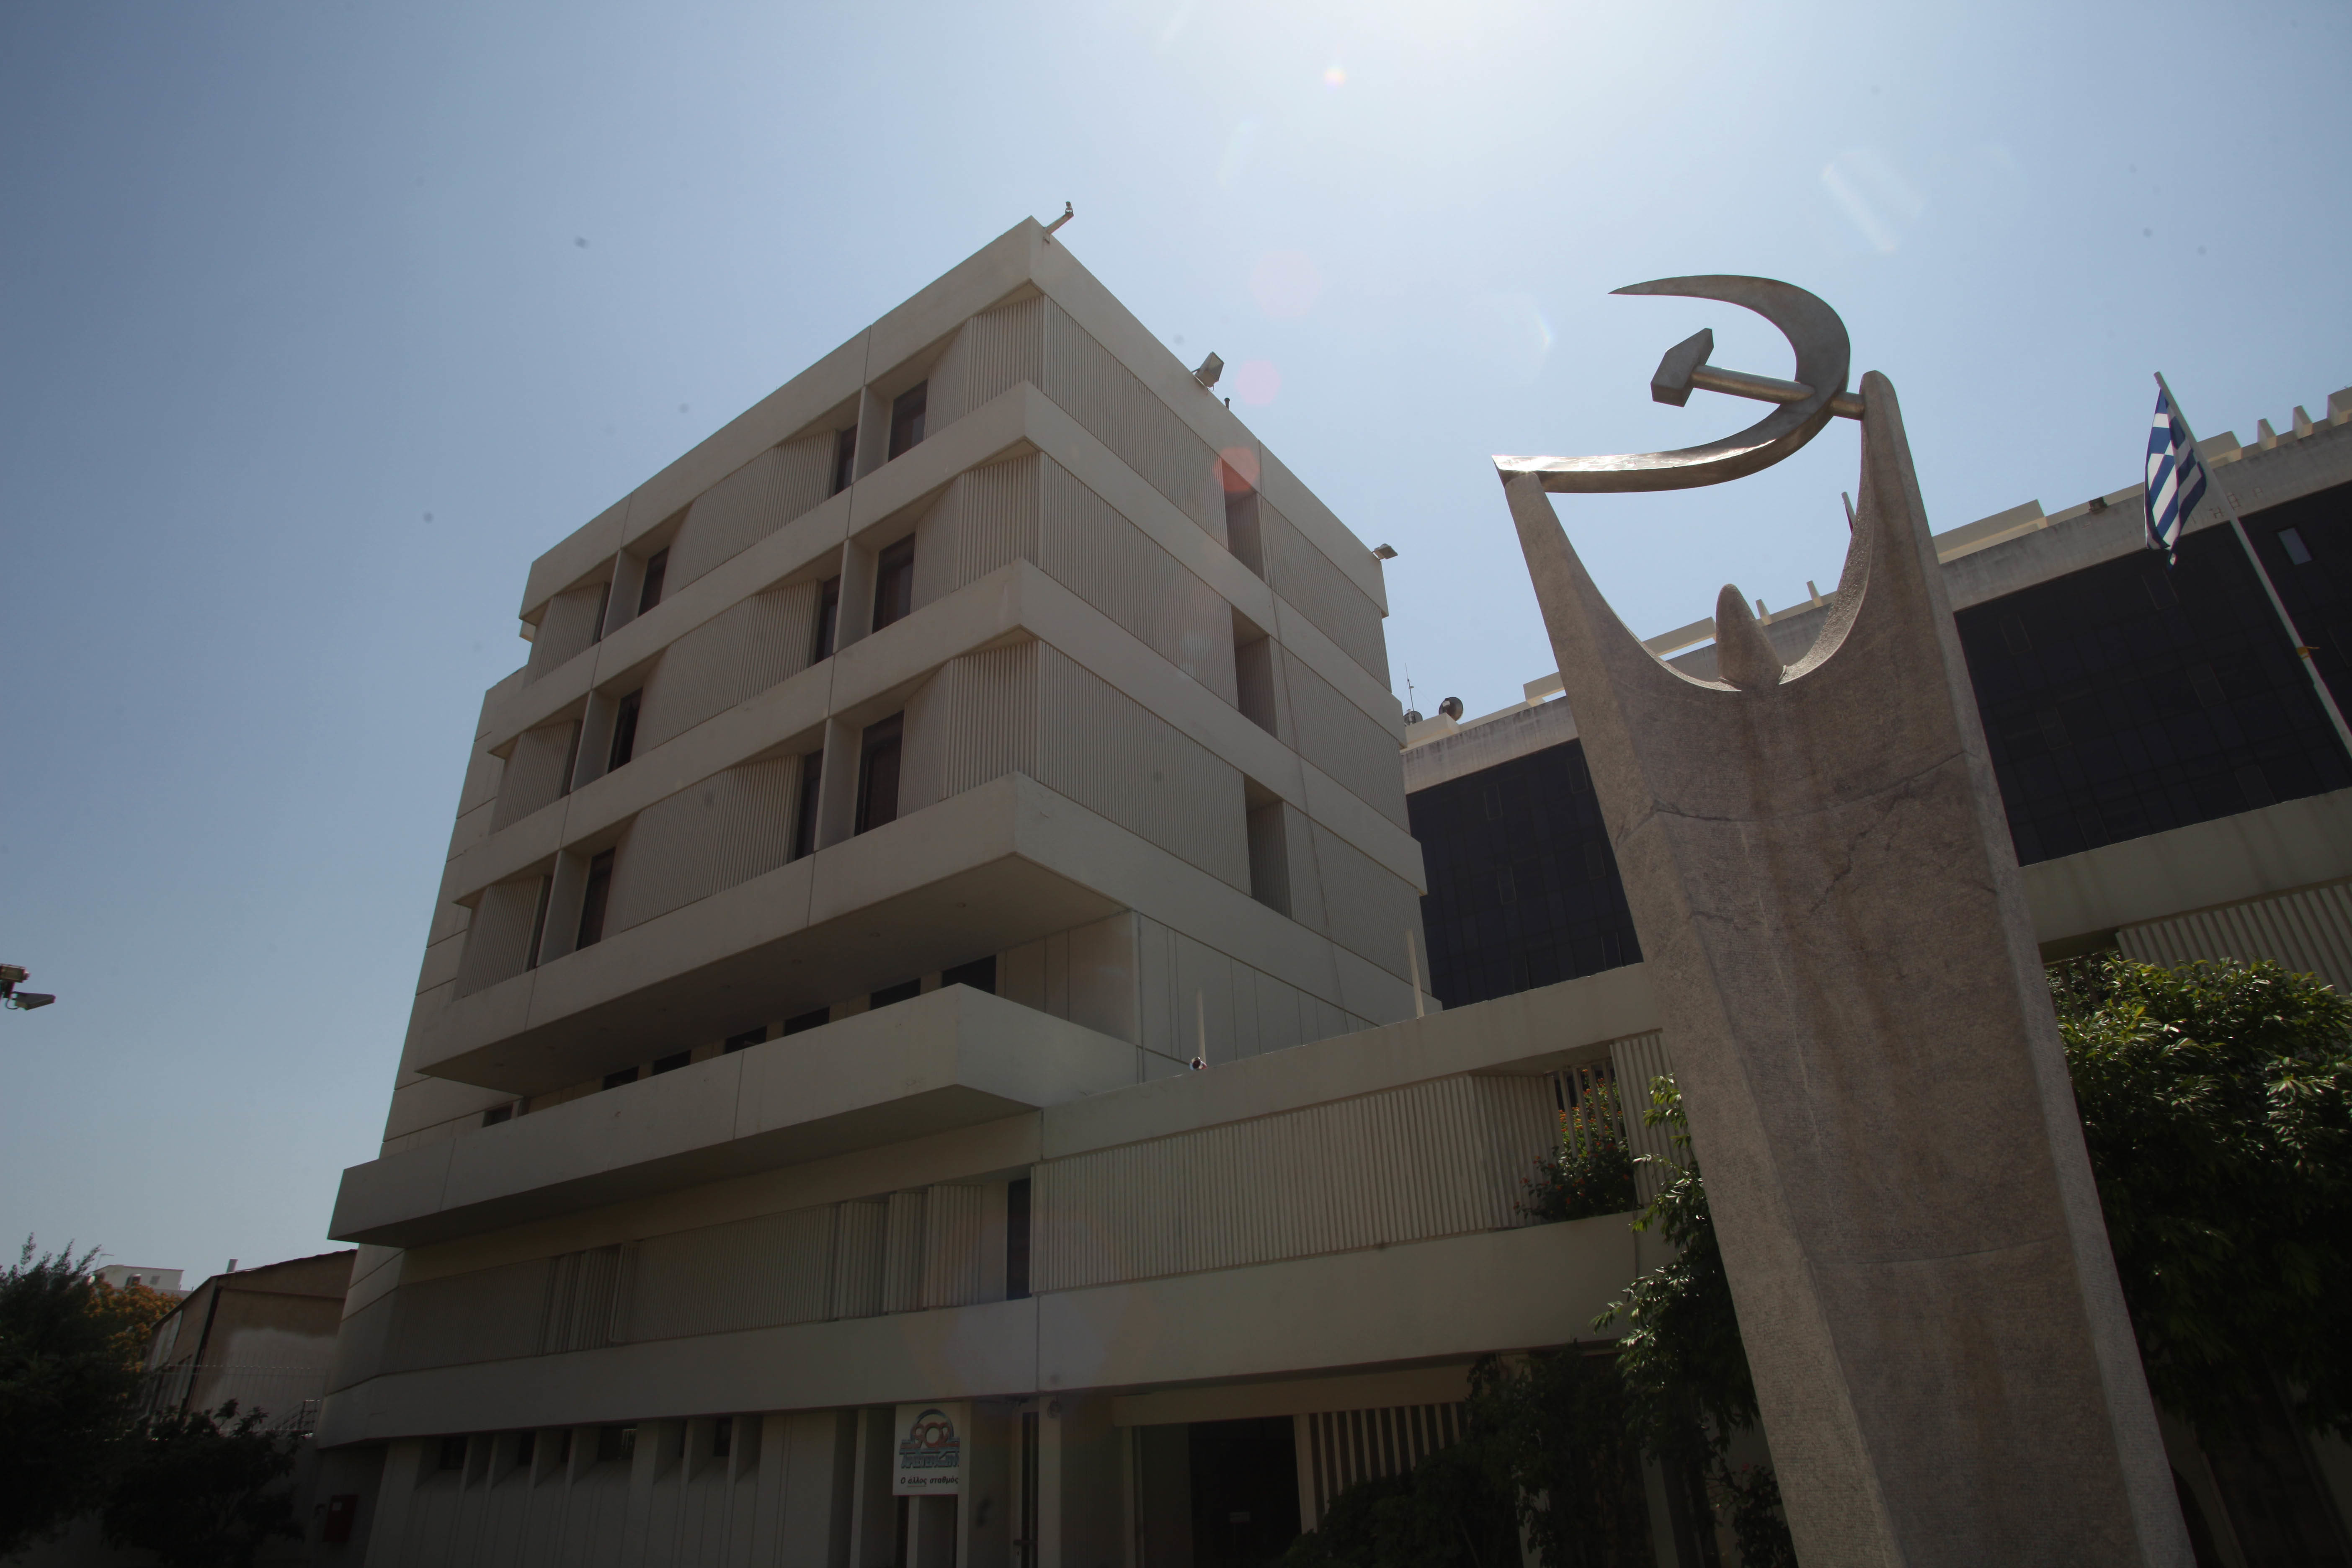 ΚΚΕ: Όλα έτοιμα για το 21ο Συνέδριο – Η ιστορία του «εμβληματικού» κτιρίου του Περισσού και τα έργα τέχνης που προκαλούν αίσθηση